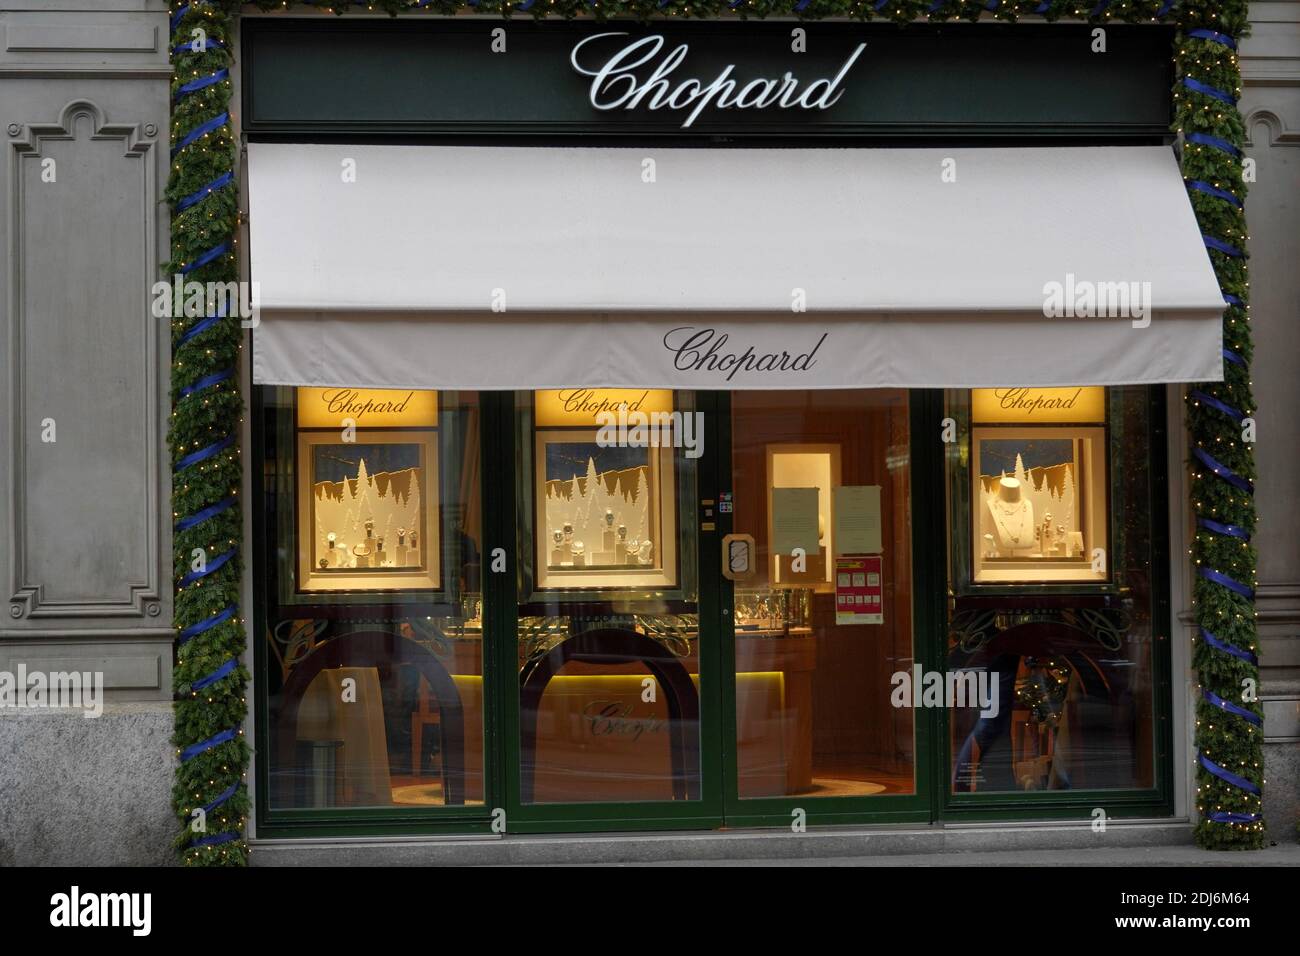 Zürich, Schweiz - 12 12 2020: Chopard, Schmuck- und Luxusuhren-Boutique in Zürich, Bahhofrstraße mit weihnachtlicher Dekoration am Eingang. Stockfoto